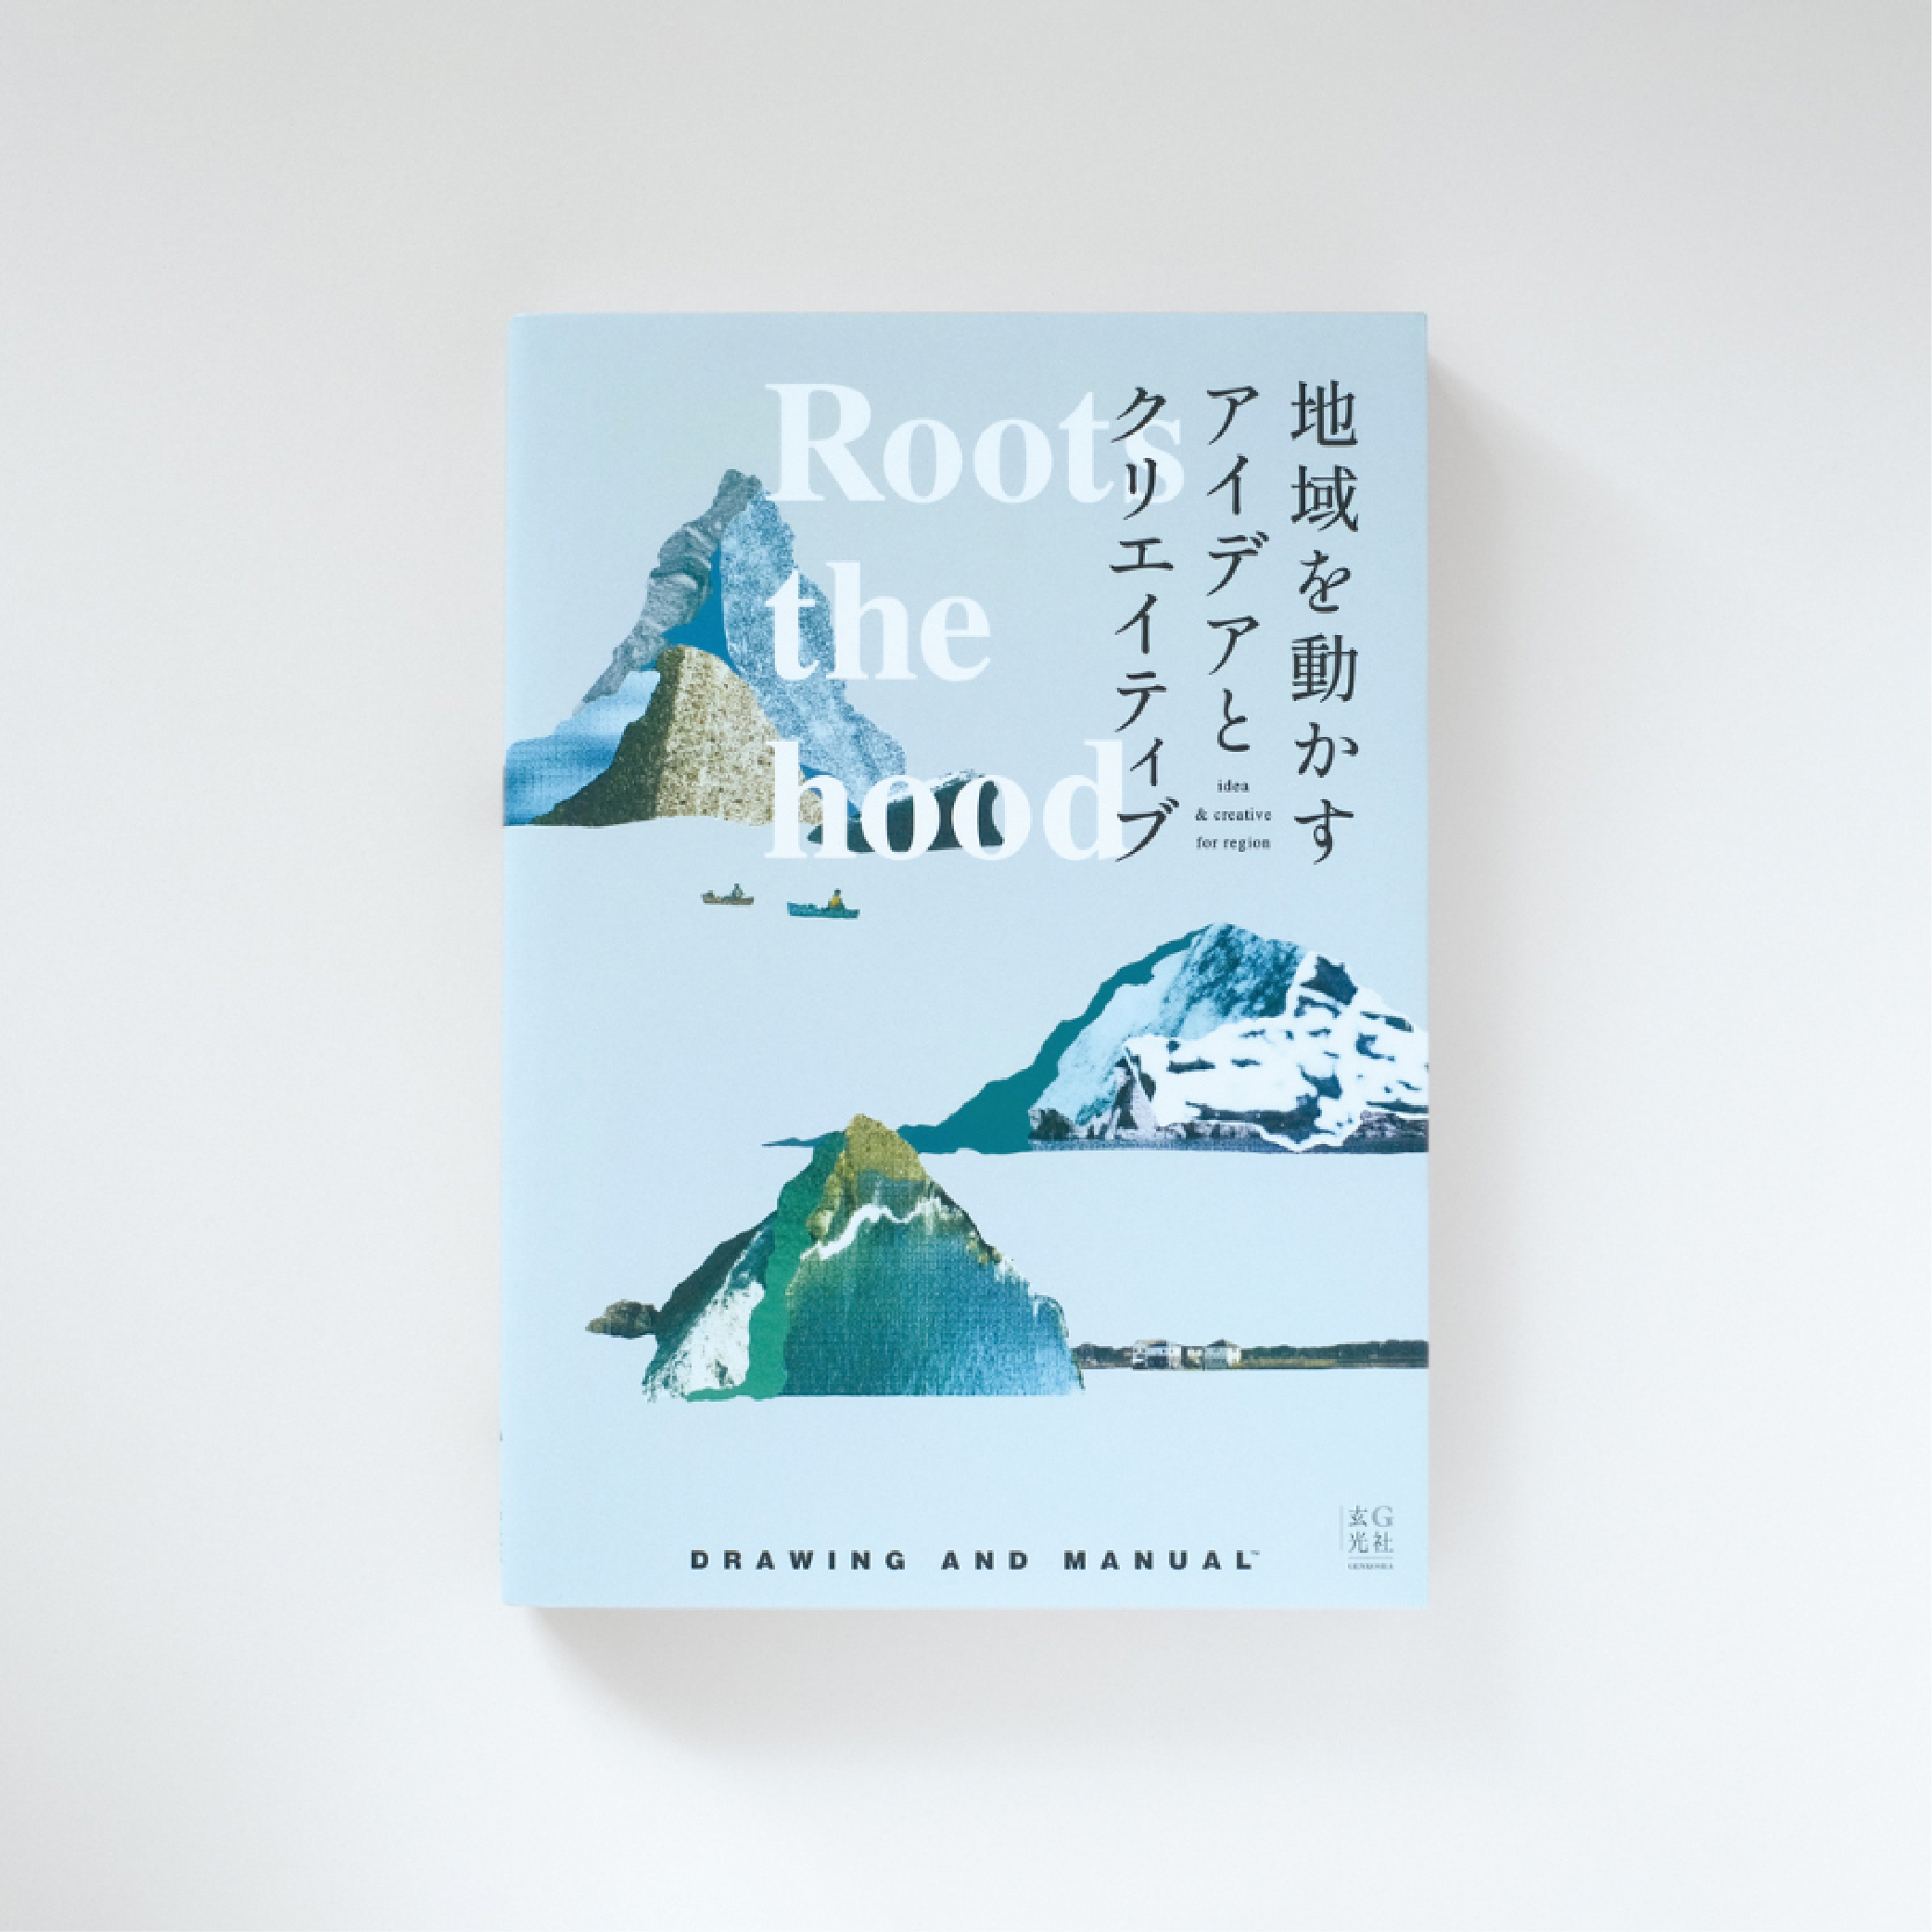 【 メディア掲載 】書籍『Roots the hood 地域を動かすアイデアとクリエイティブ』に掲載されました